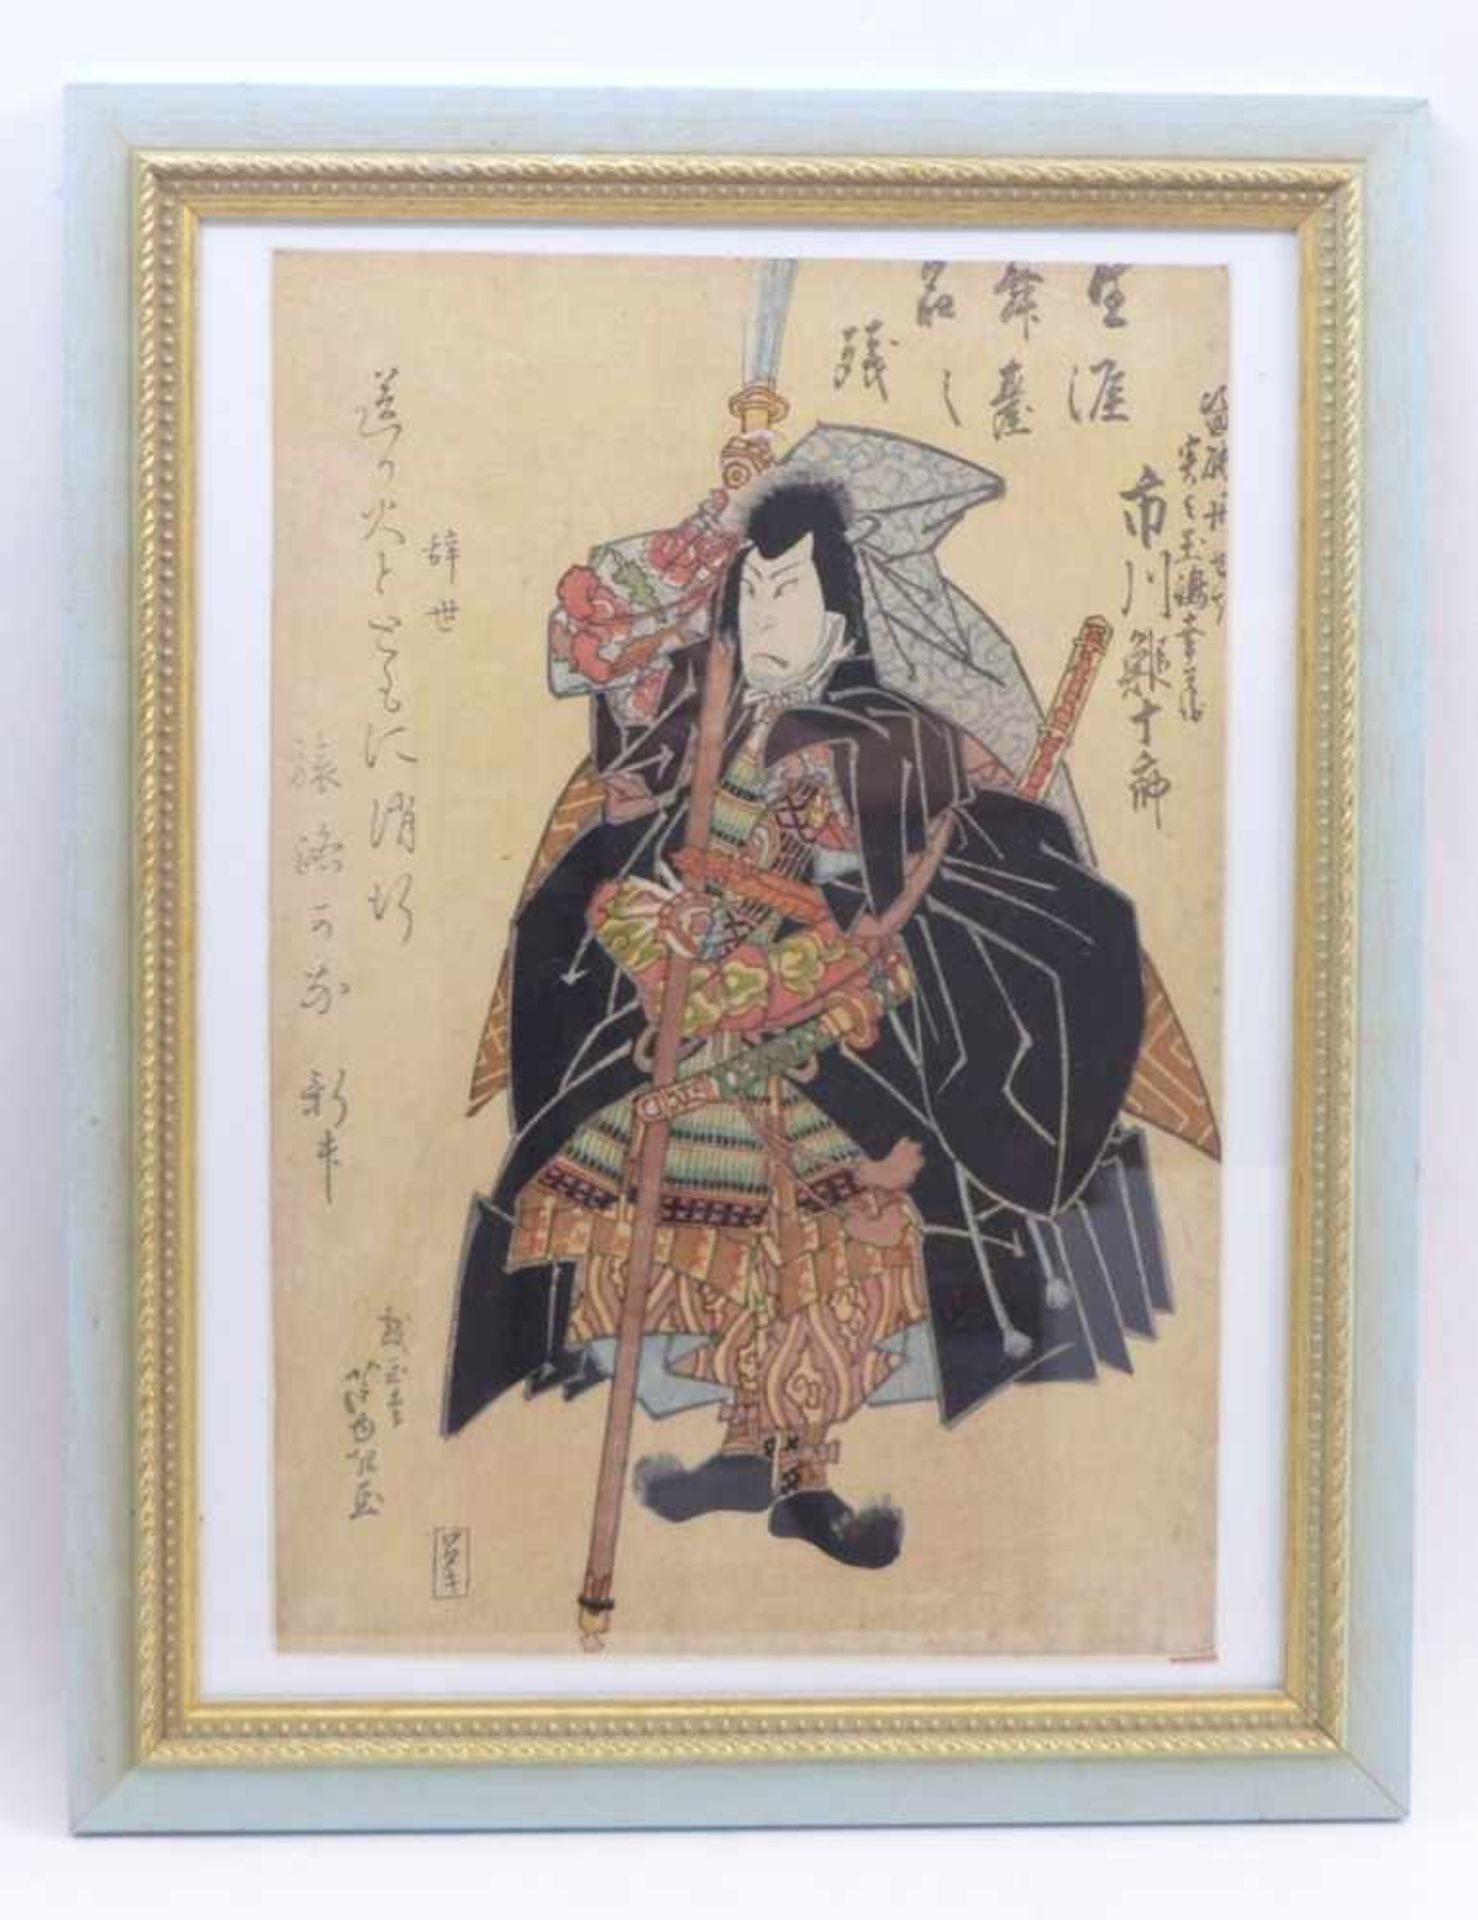 Bildnis eines Schauspielers als SamuraiJapan, 19. Jh.Farbholzschnitt. Verlegerstempel Wataya - Image 2 of 2